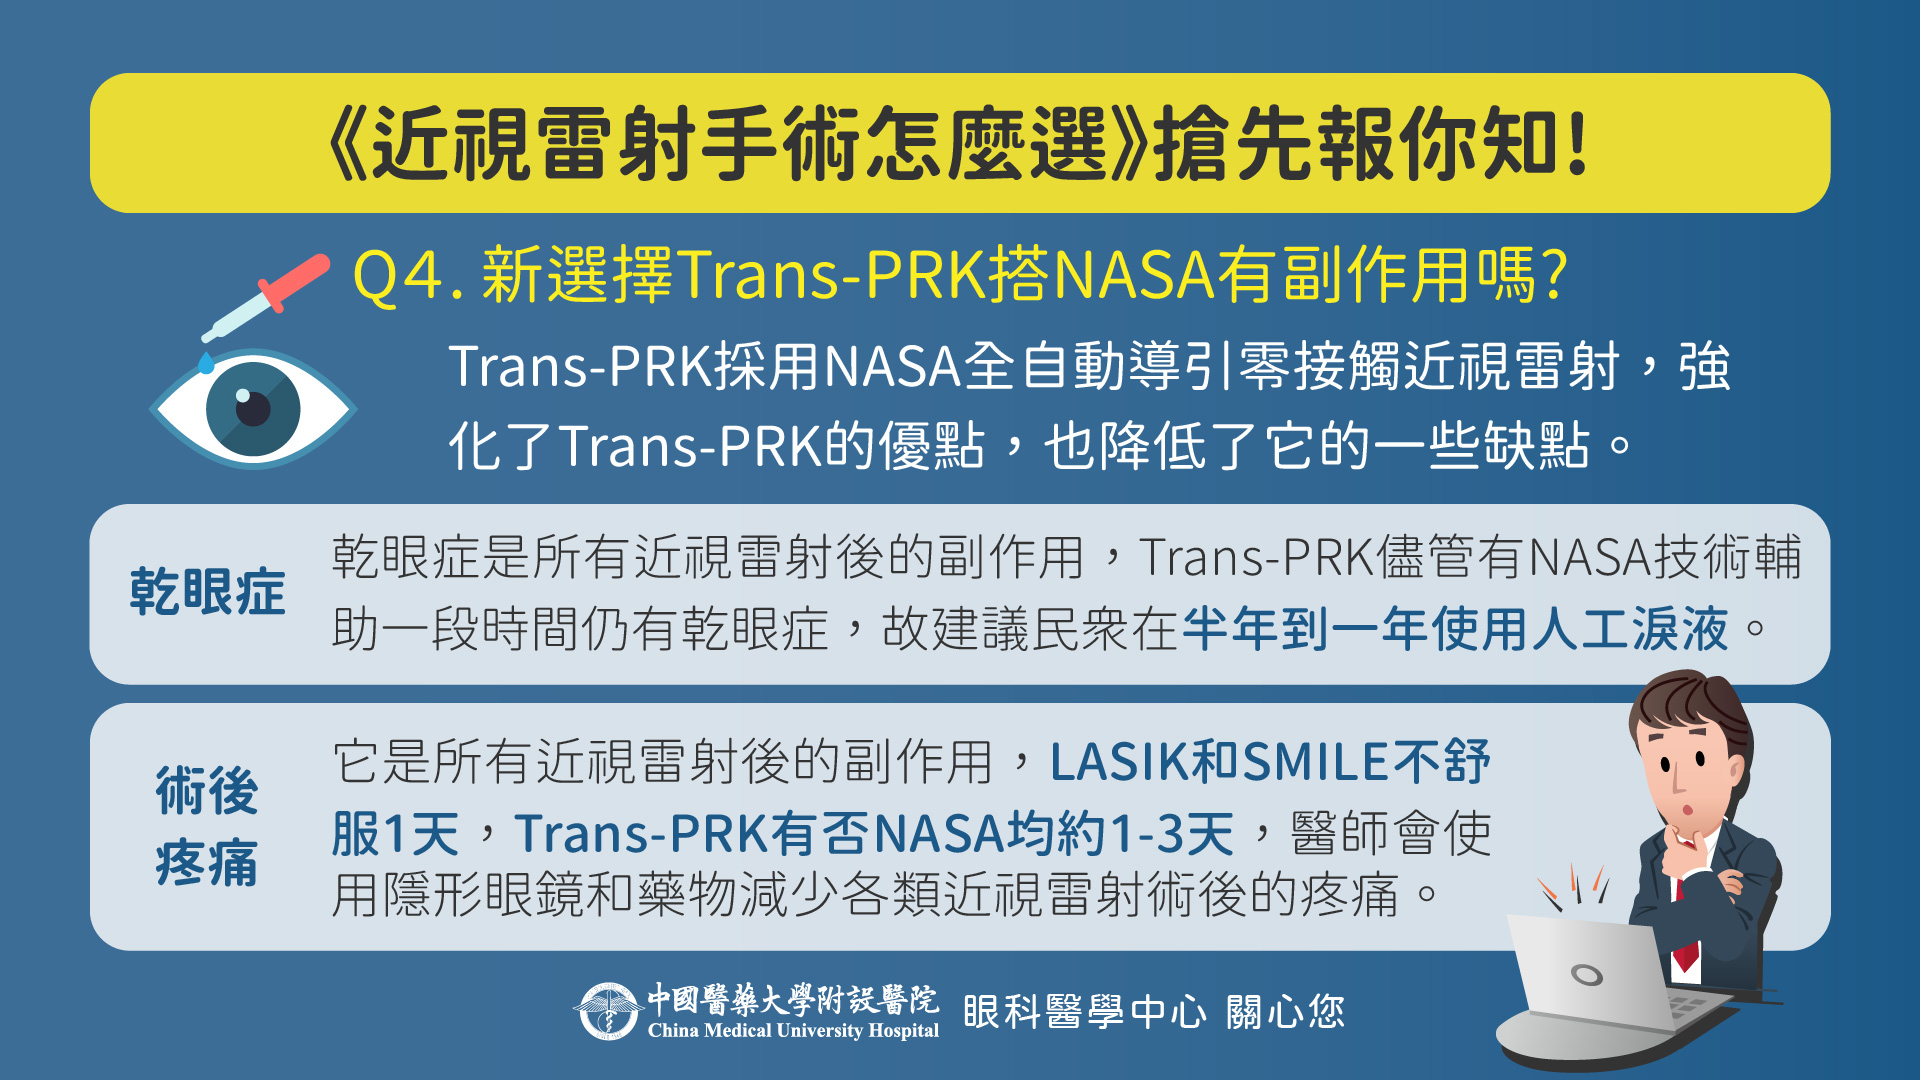 新選擇 Trans-PRK搭NASA 有副作用嗎